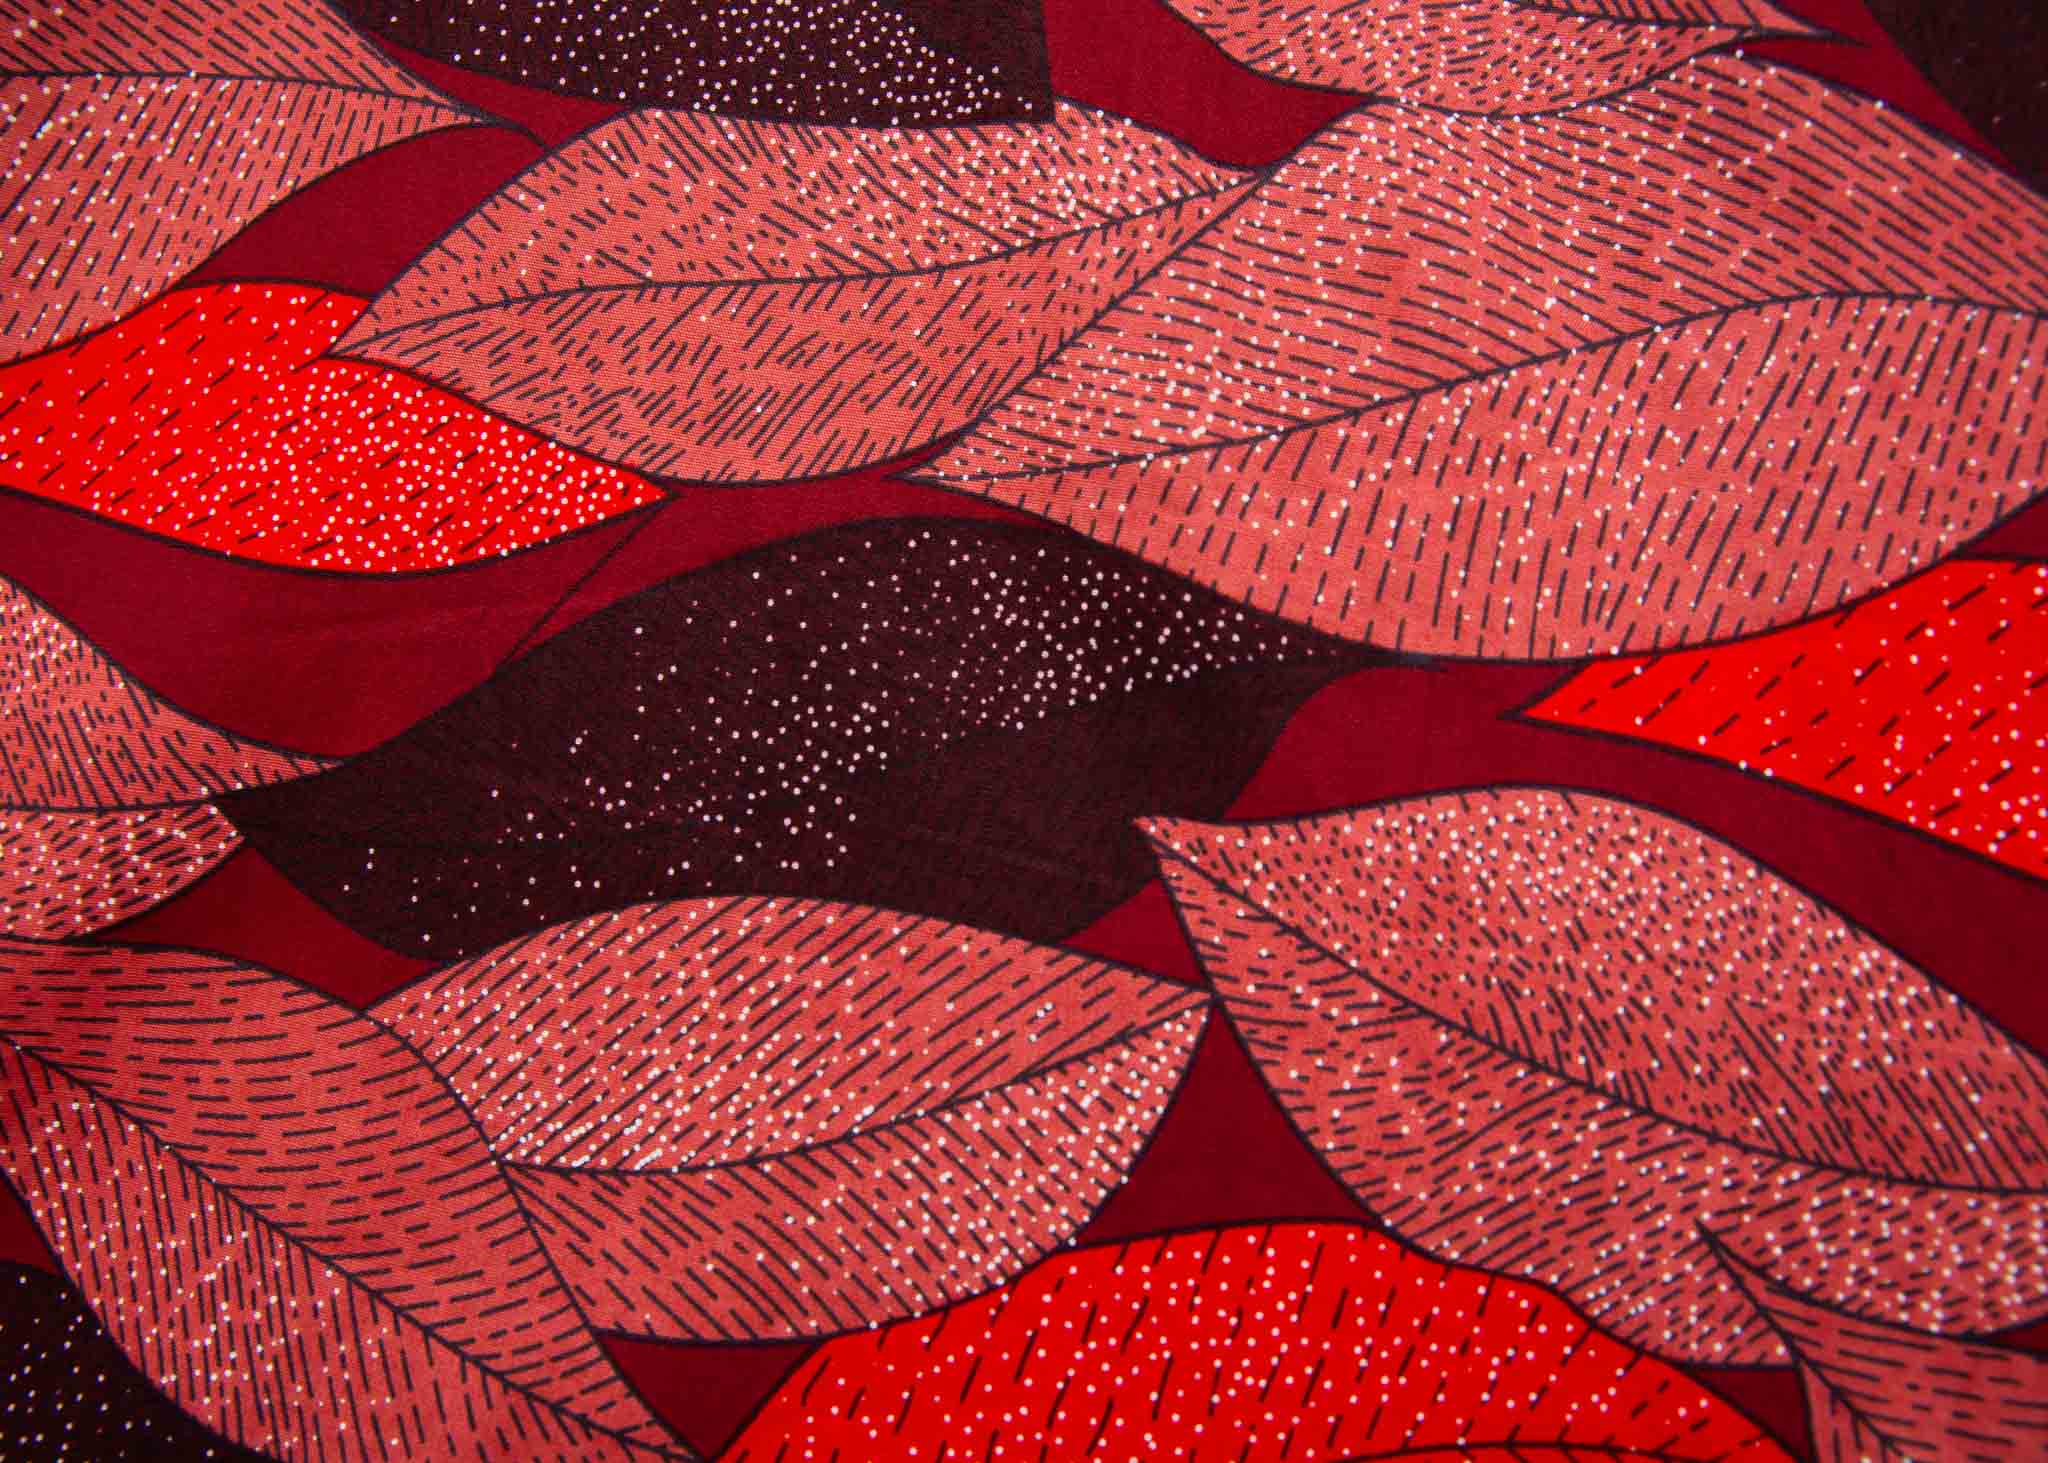 Display of red, brown, burgundy leaf print dress.